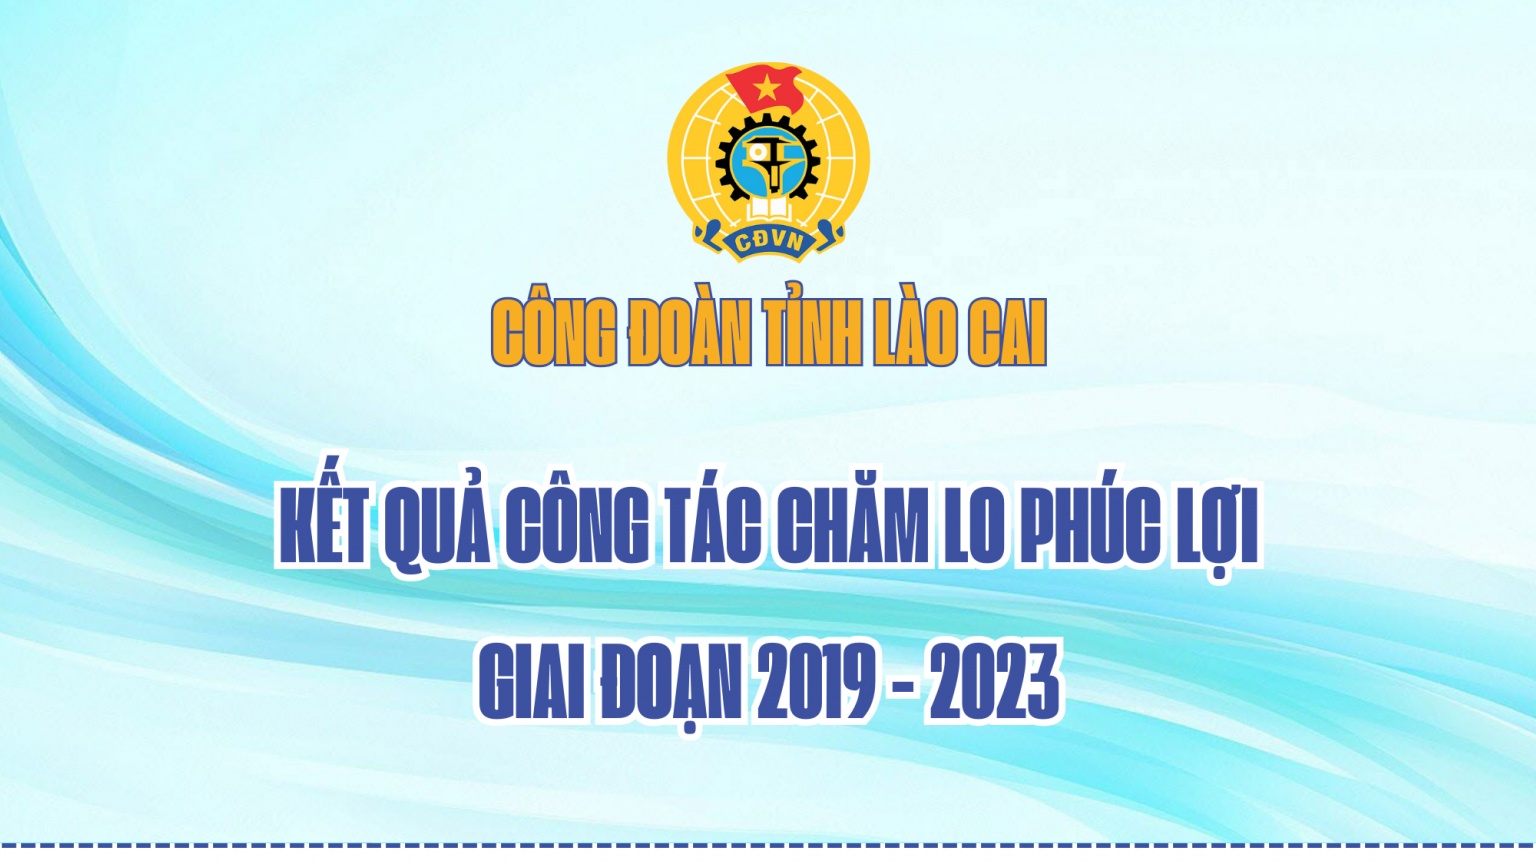 Công đoàn Lào Cai: Kết quả chăm lo phúc lợi giai đoạn 2019 - 2023